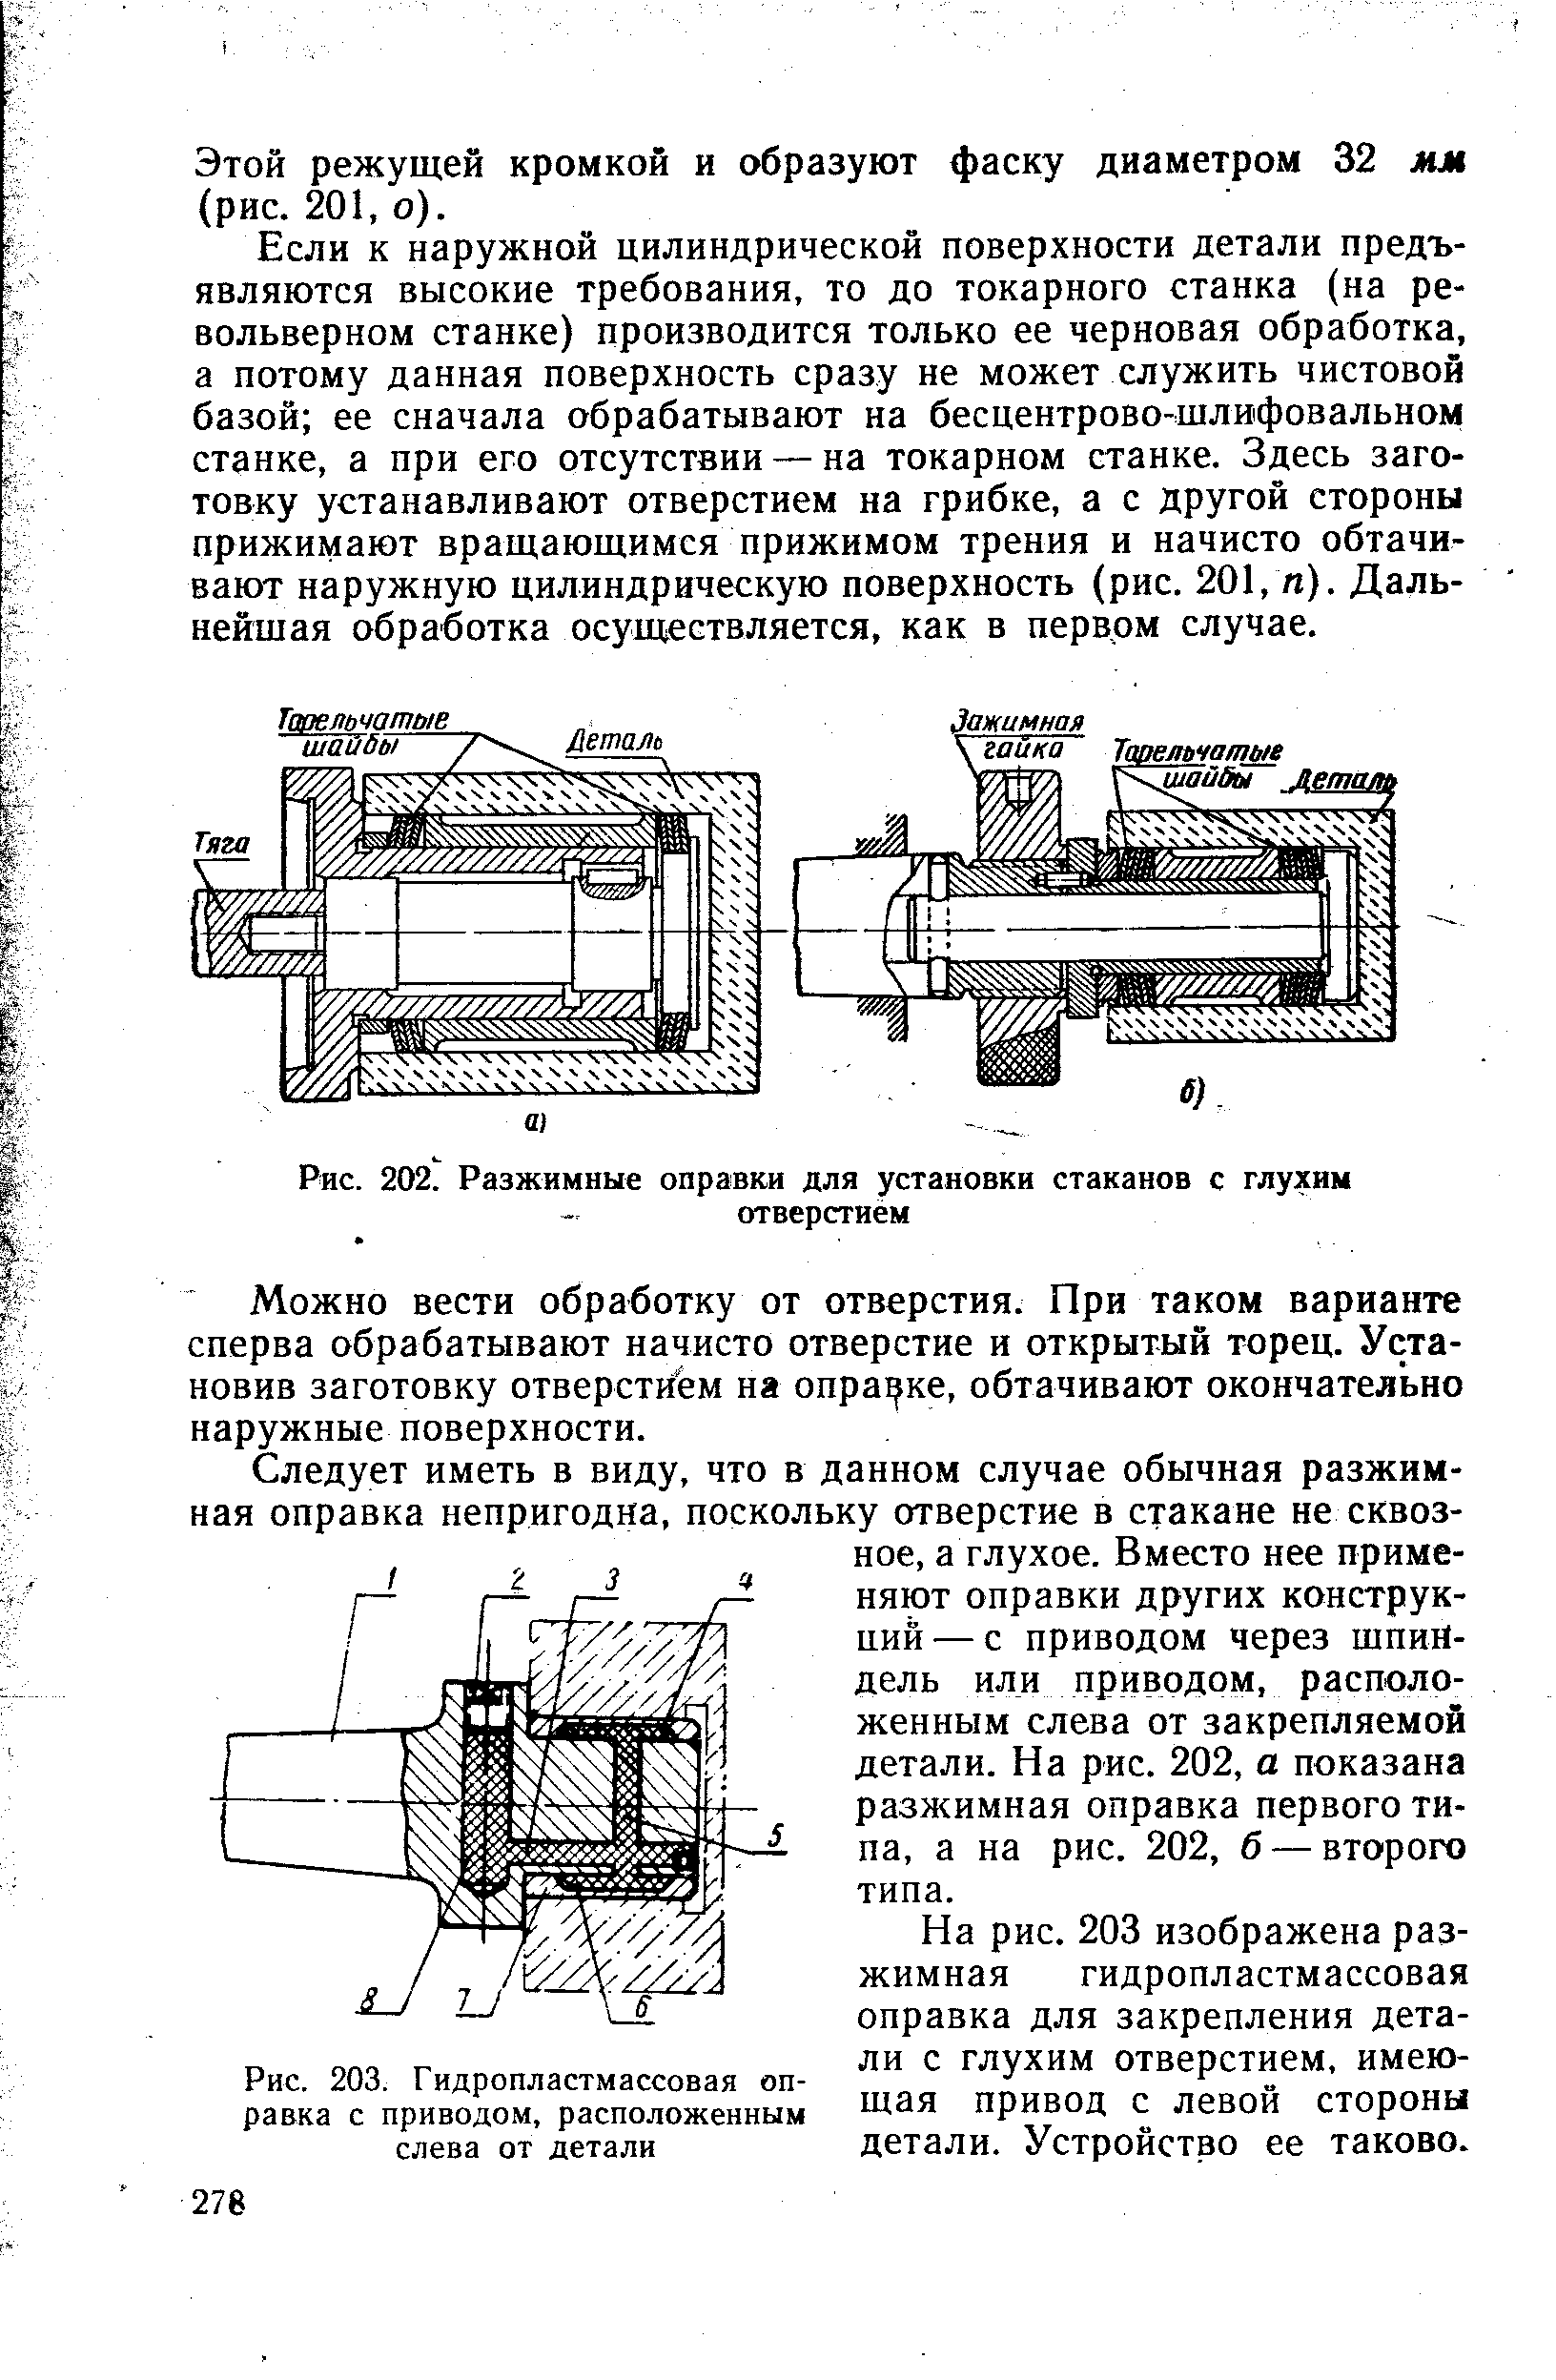 Рис. 203. Гидропластмассовая оправка с приводом, расположенным слева от детали
